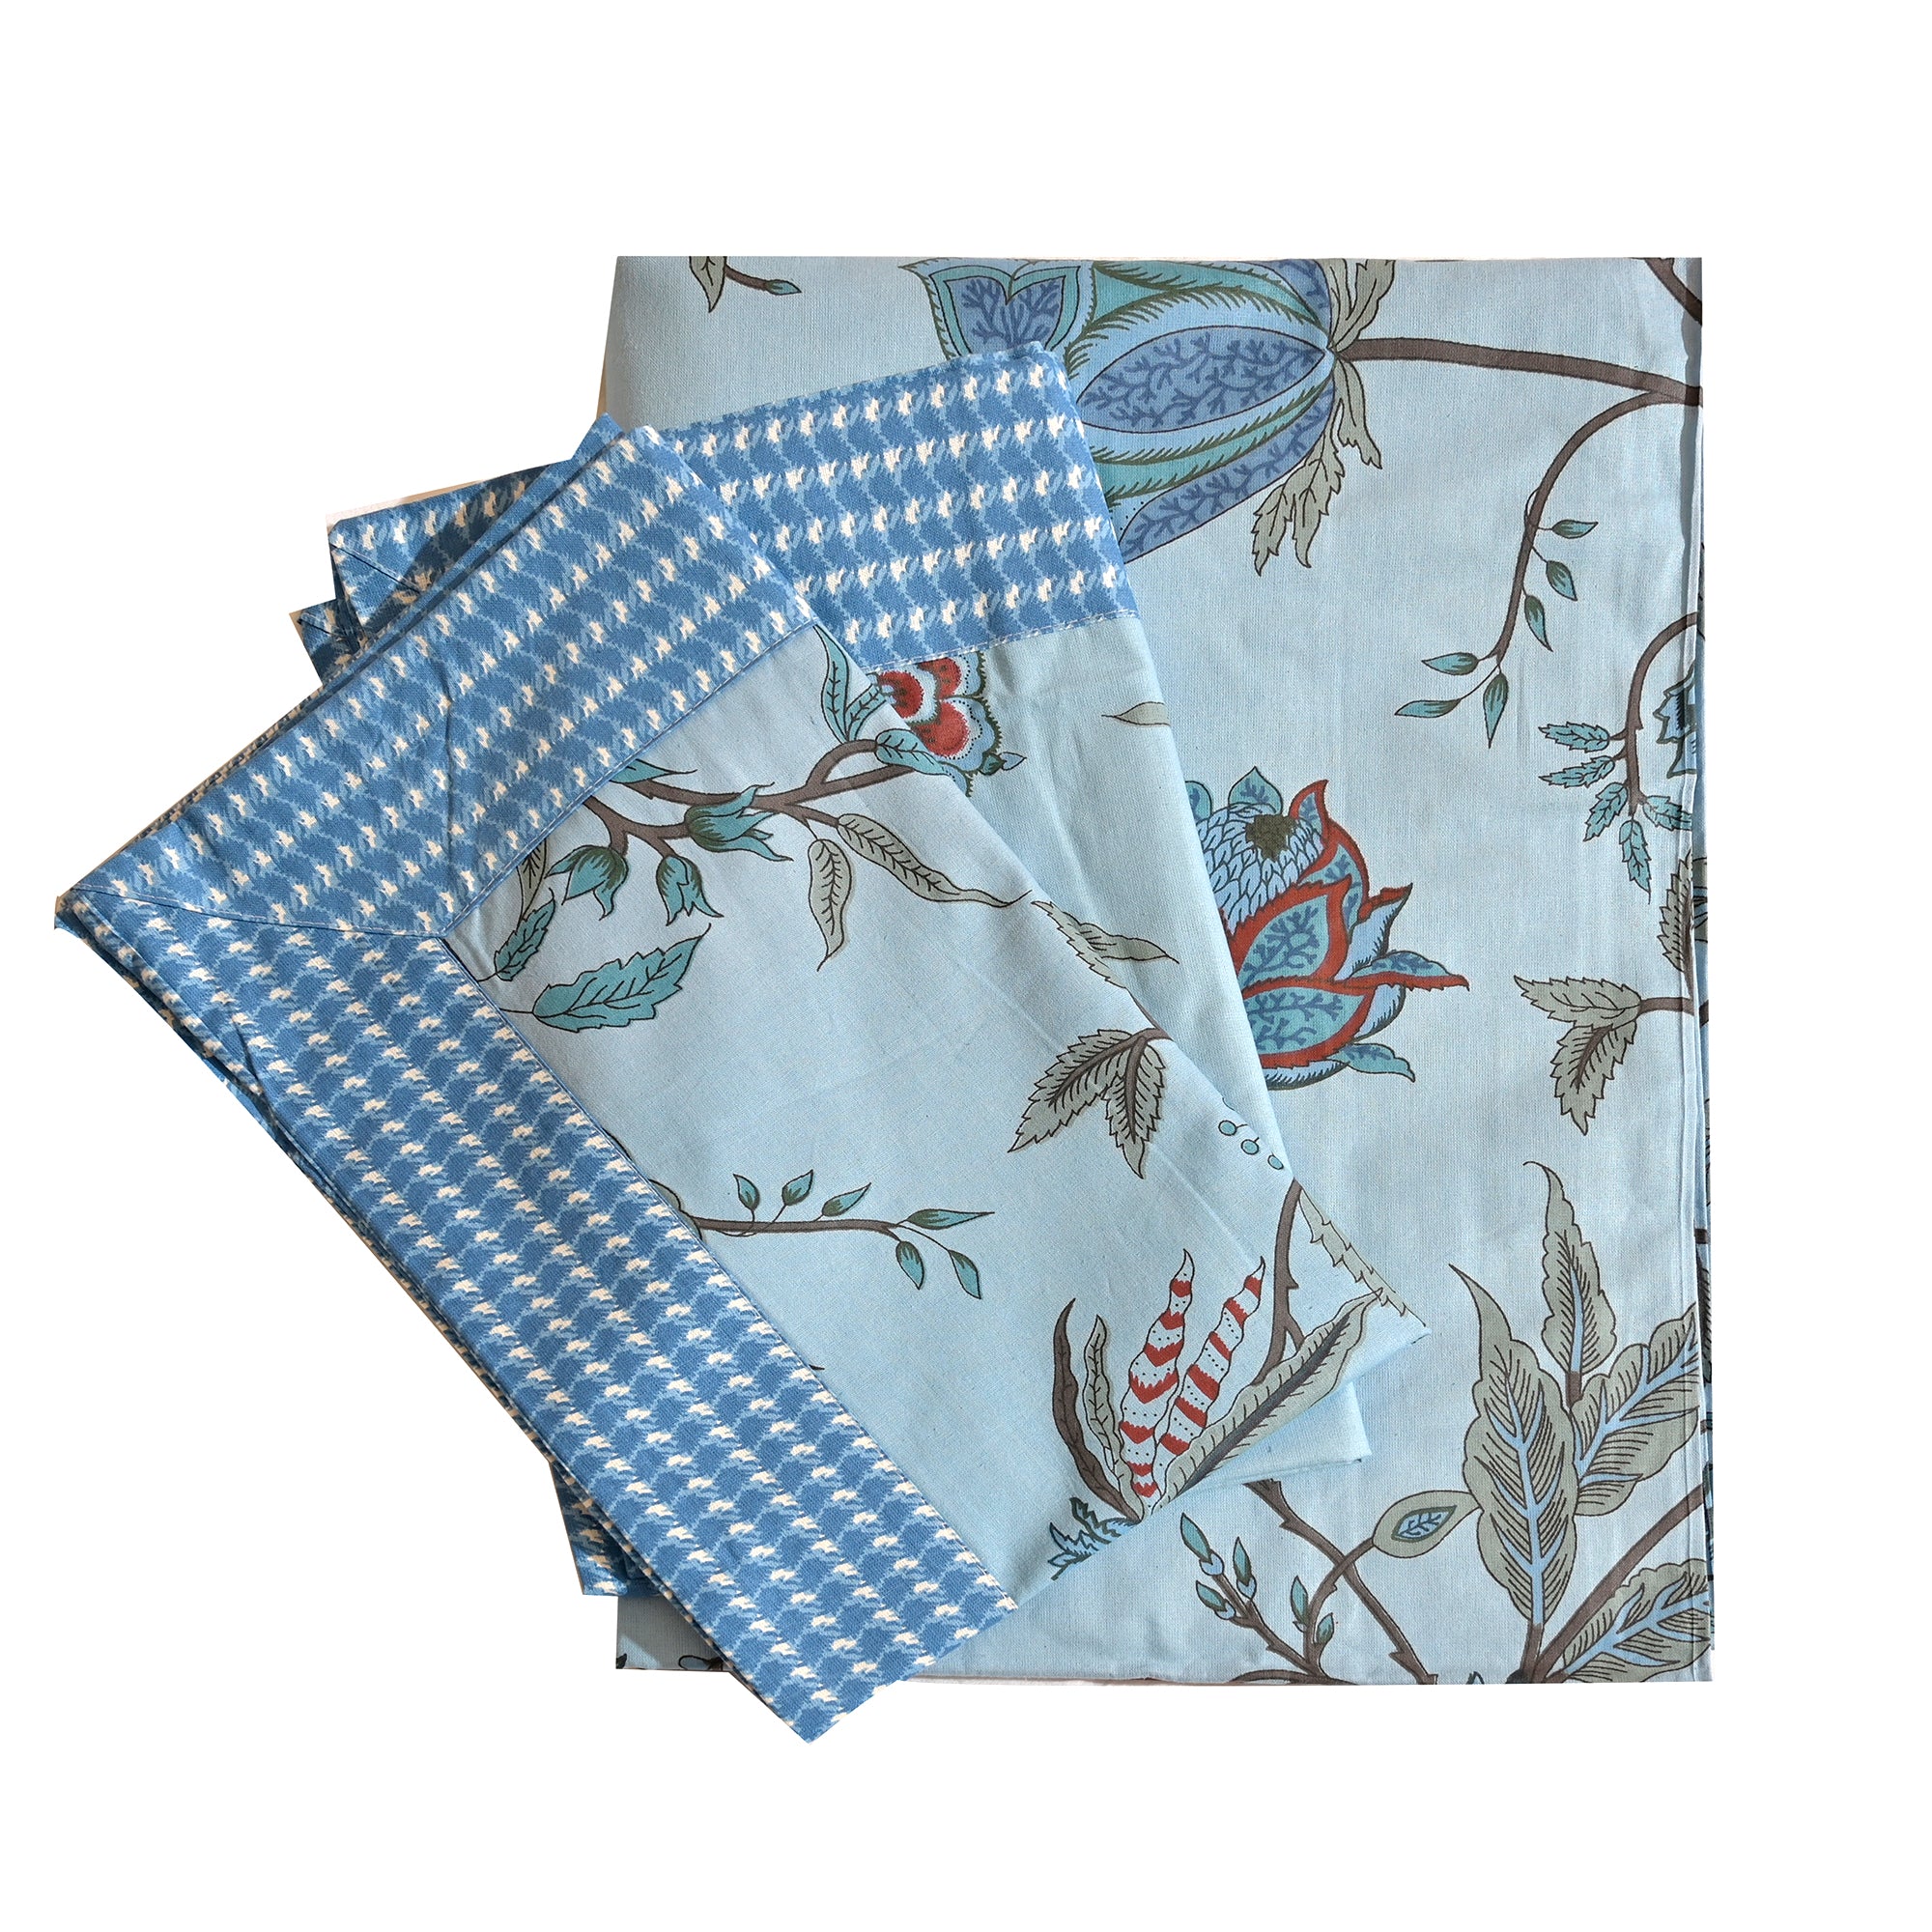 Traditional Blue Floral Vine Printed Cotton Bedsheet Set